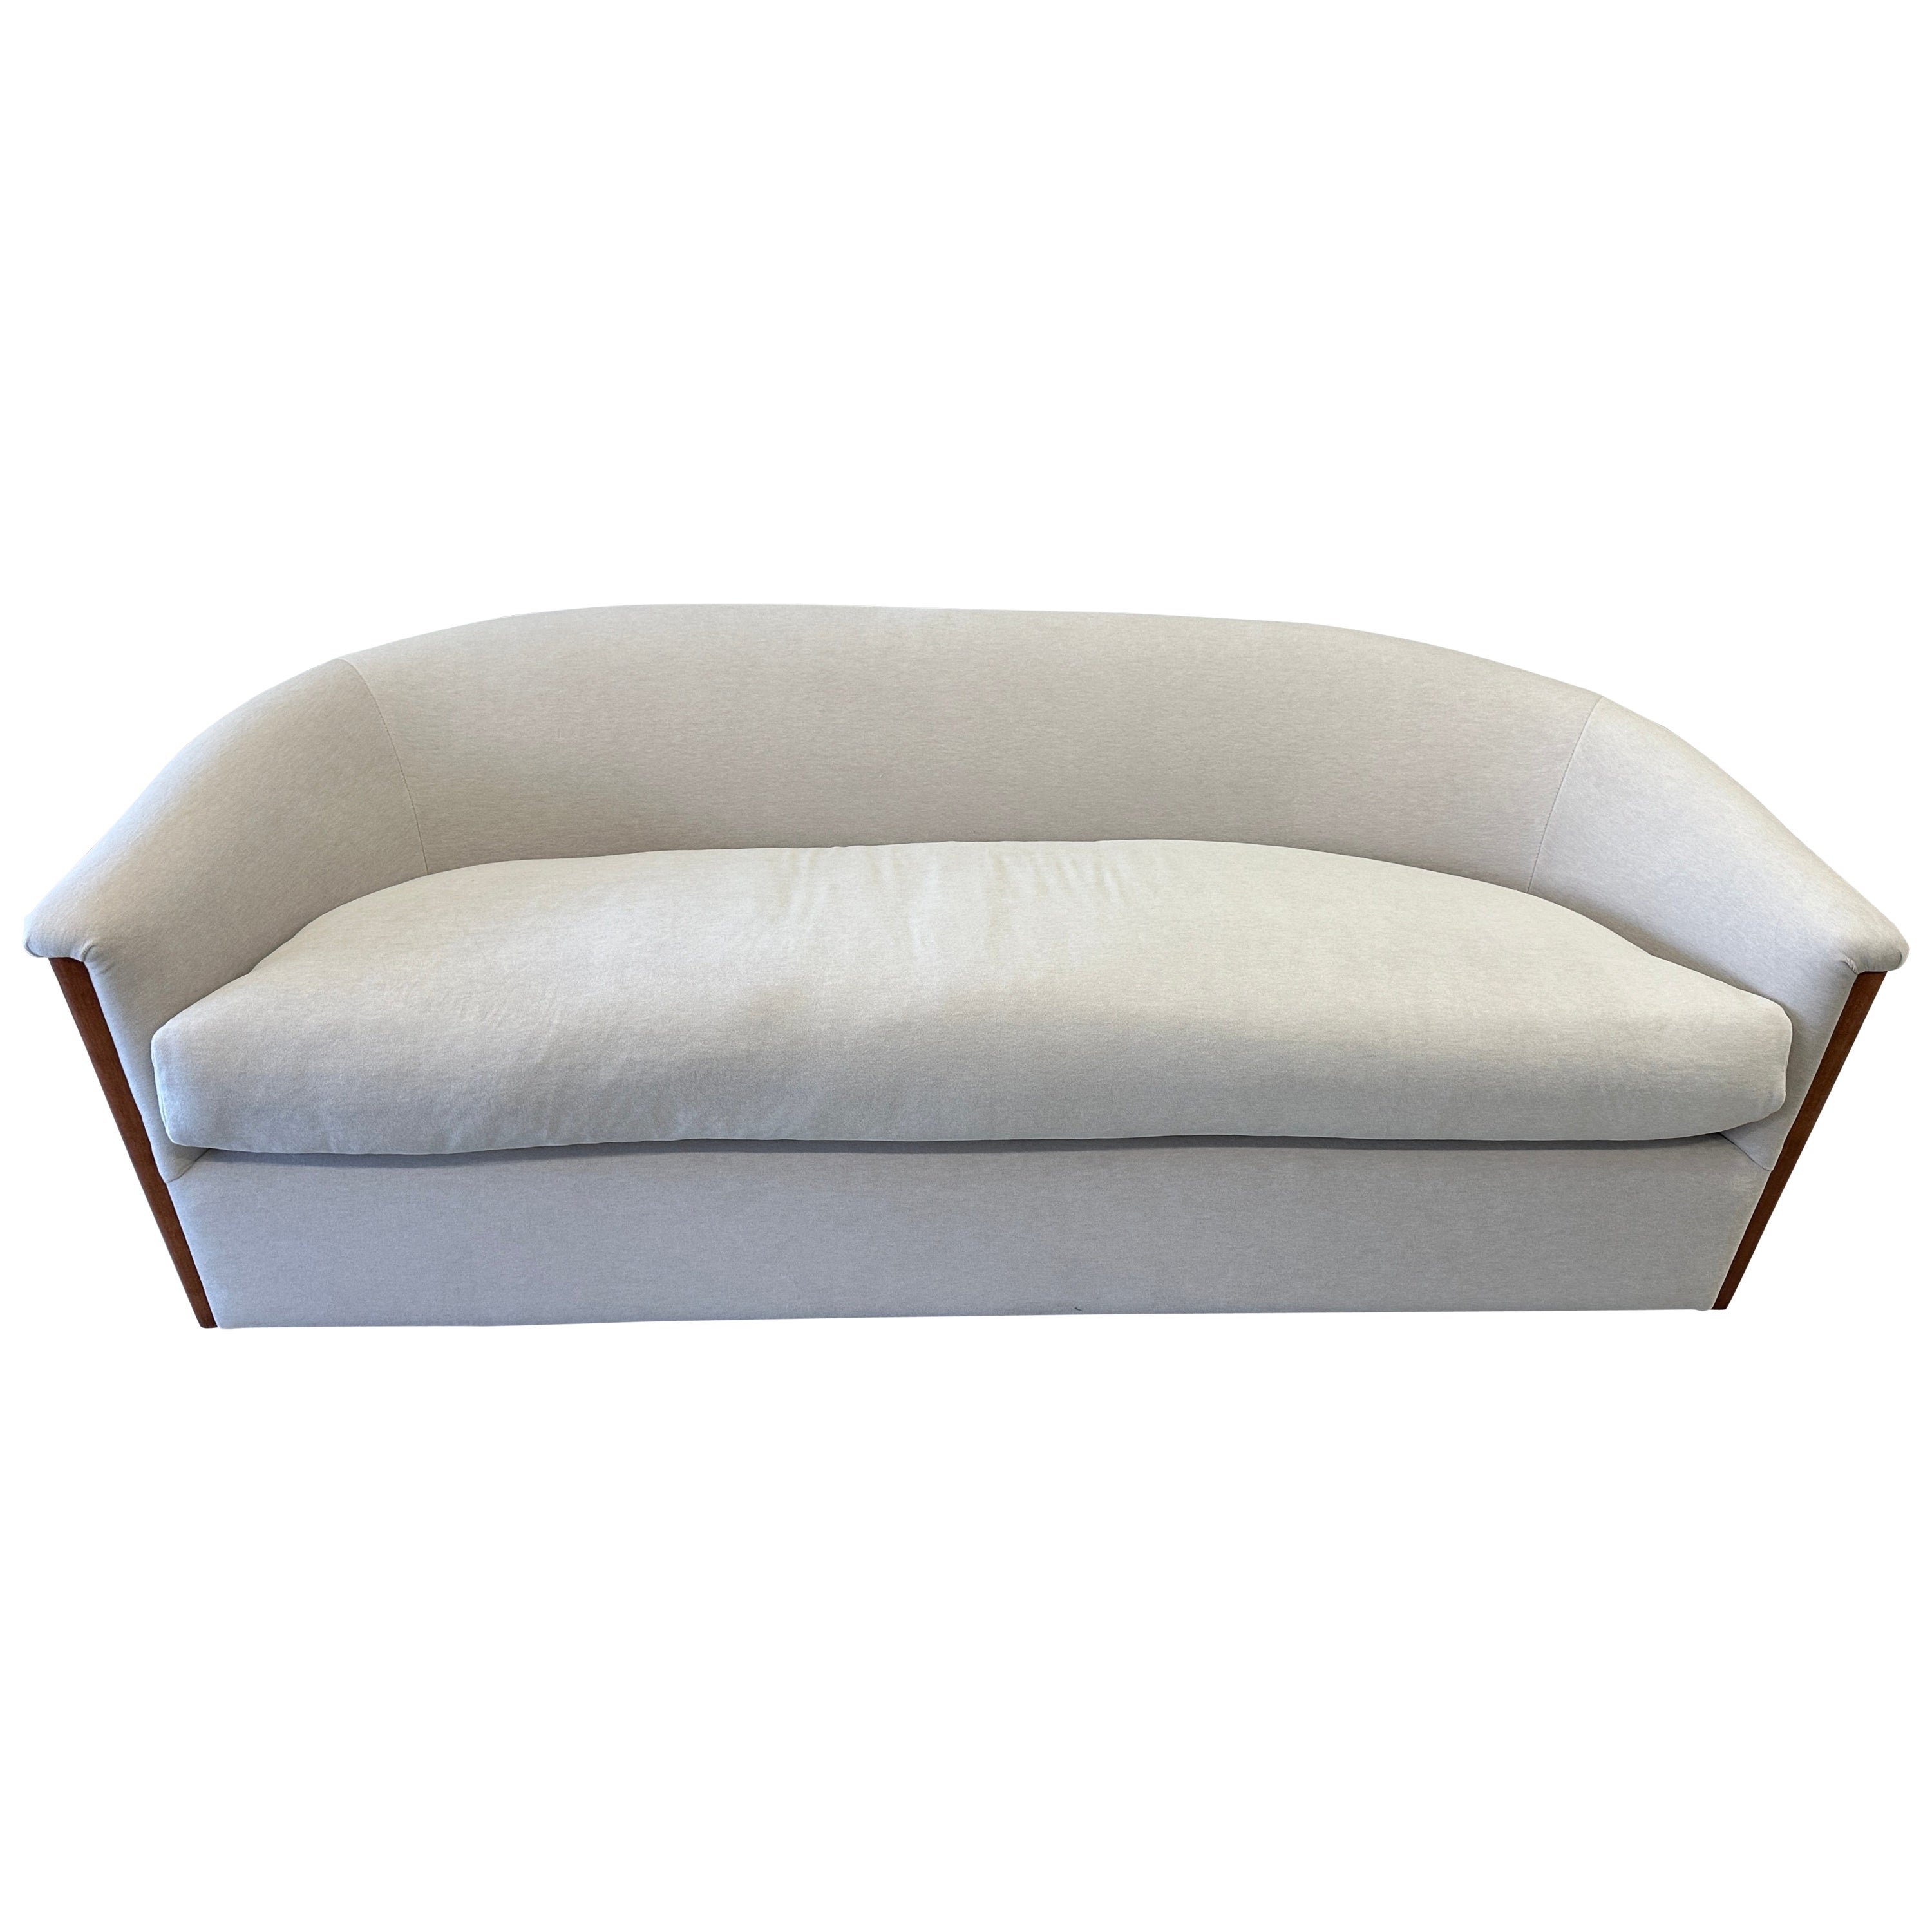 Ein schönes und äußerst bequemes Sofa von Sally Siskin Lewis , J Robert Scott. Wir haben es in einem prächtigen Mario Sirtori Alpaka/Baumwolle/Wolle/Poly-Mischgewebe umgestaltet, das sich so weich anfühlt. Das Kissen ist aus Daunen und weich und